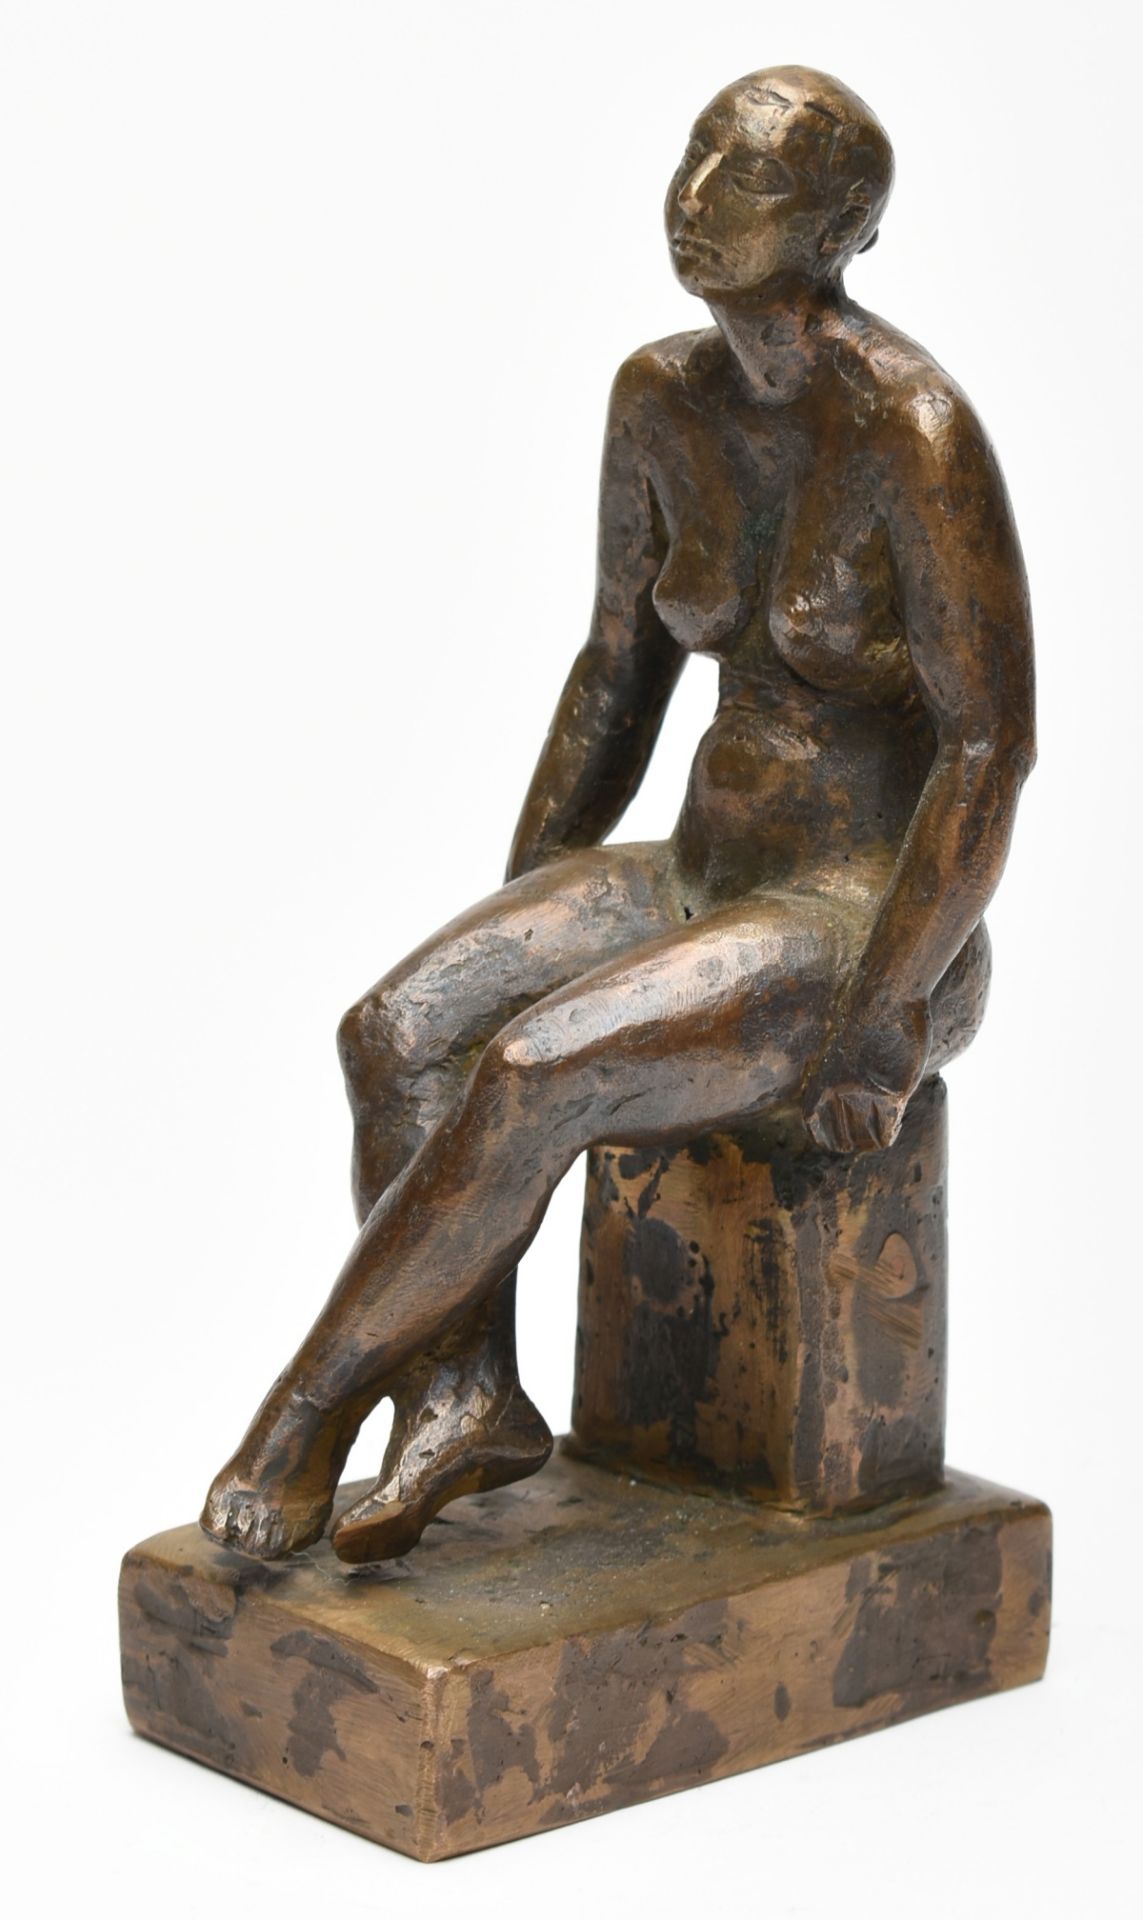 Sitzende Bronze, bräunlich patiniert, weiblicher Akt mit gekreuzten Beinen sitzend, Sockel rs. - Bild 2 aus 6